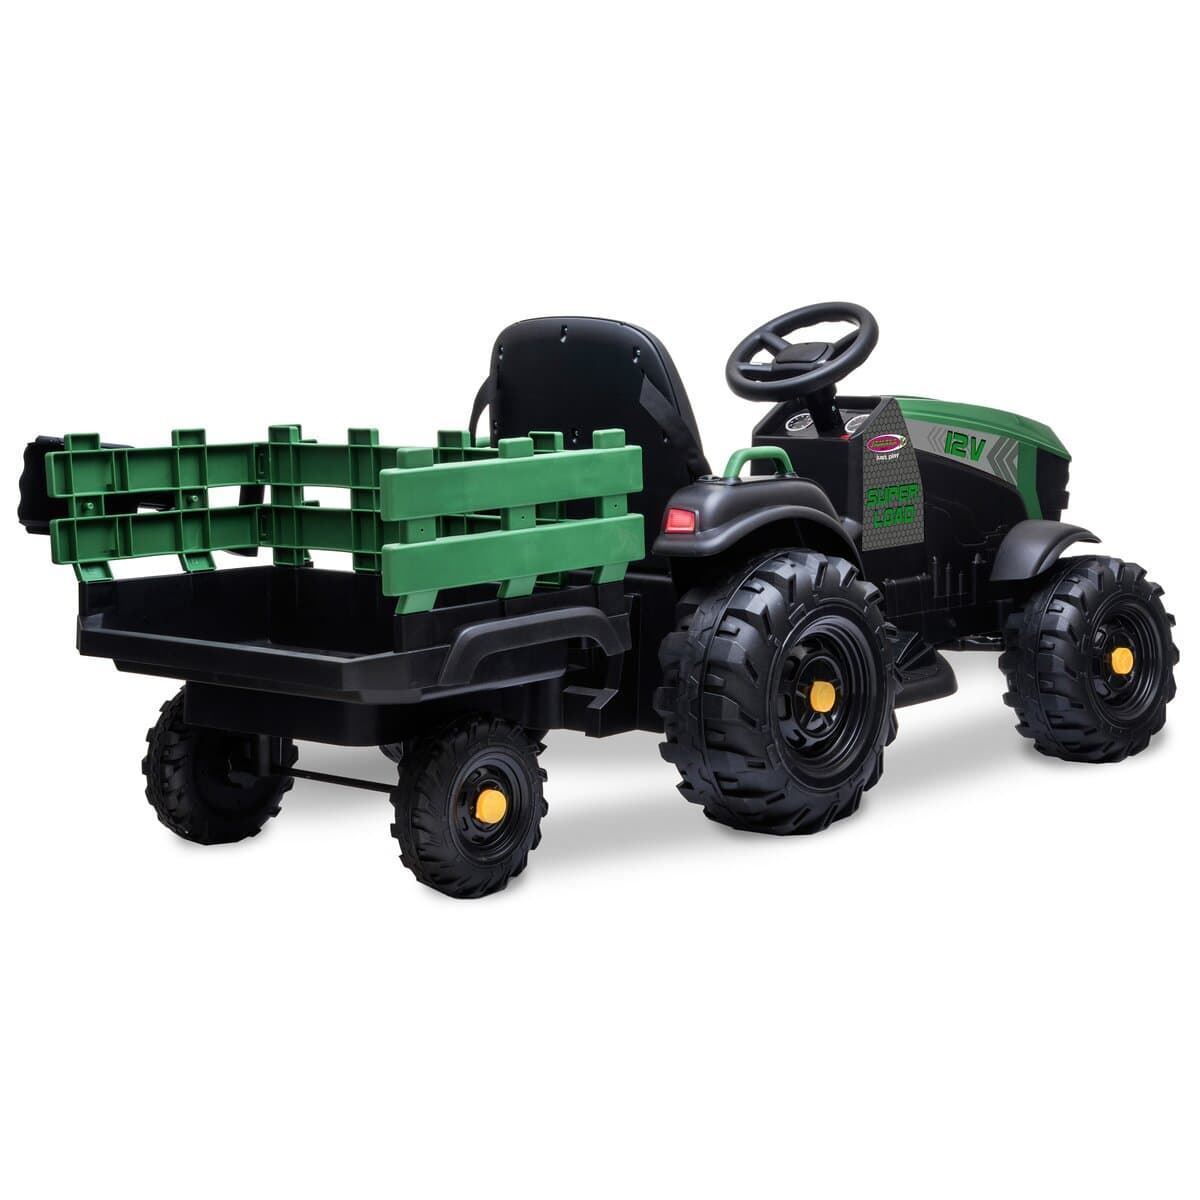 Tractor de batería 12v con remolque verde jamara 460896 - Imagen 5